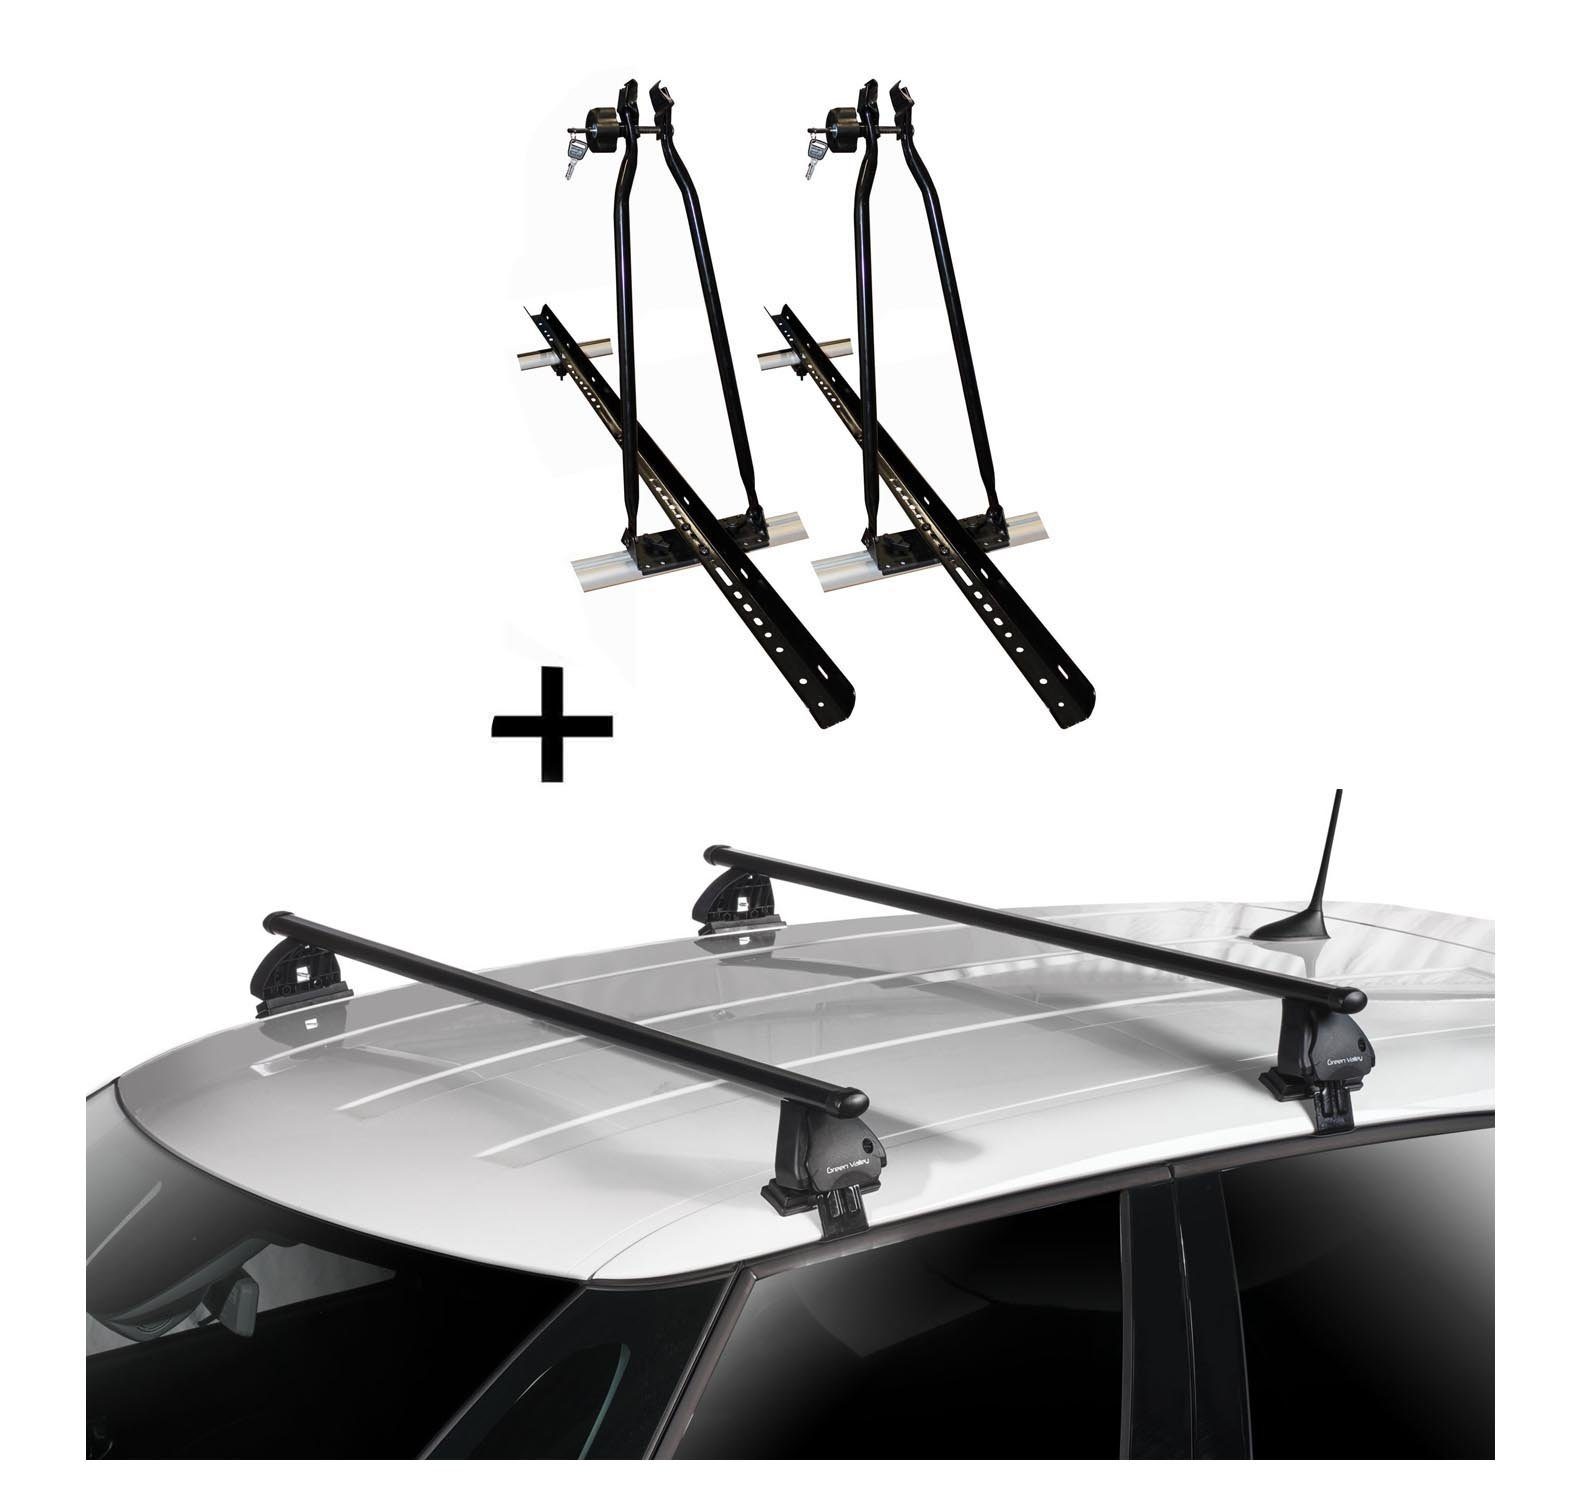 VDP Dachträger, 2x VDP Fahrradträger Dachfahrradträger + Dachträger VDP EVO Stahl kompatibel mit Peugeot 208 5 Türer 2012-2019